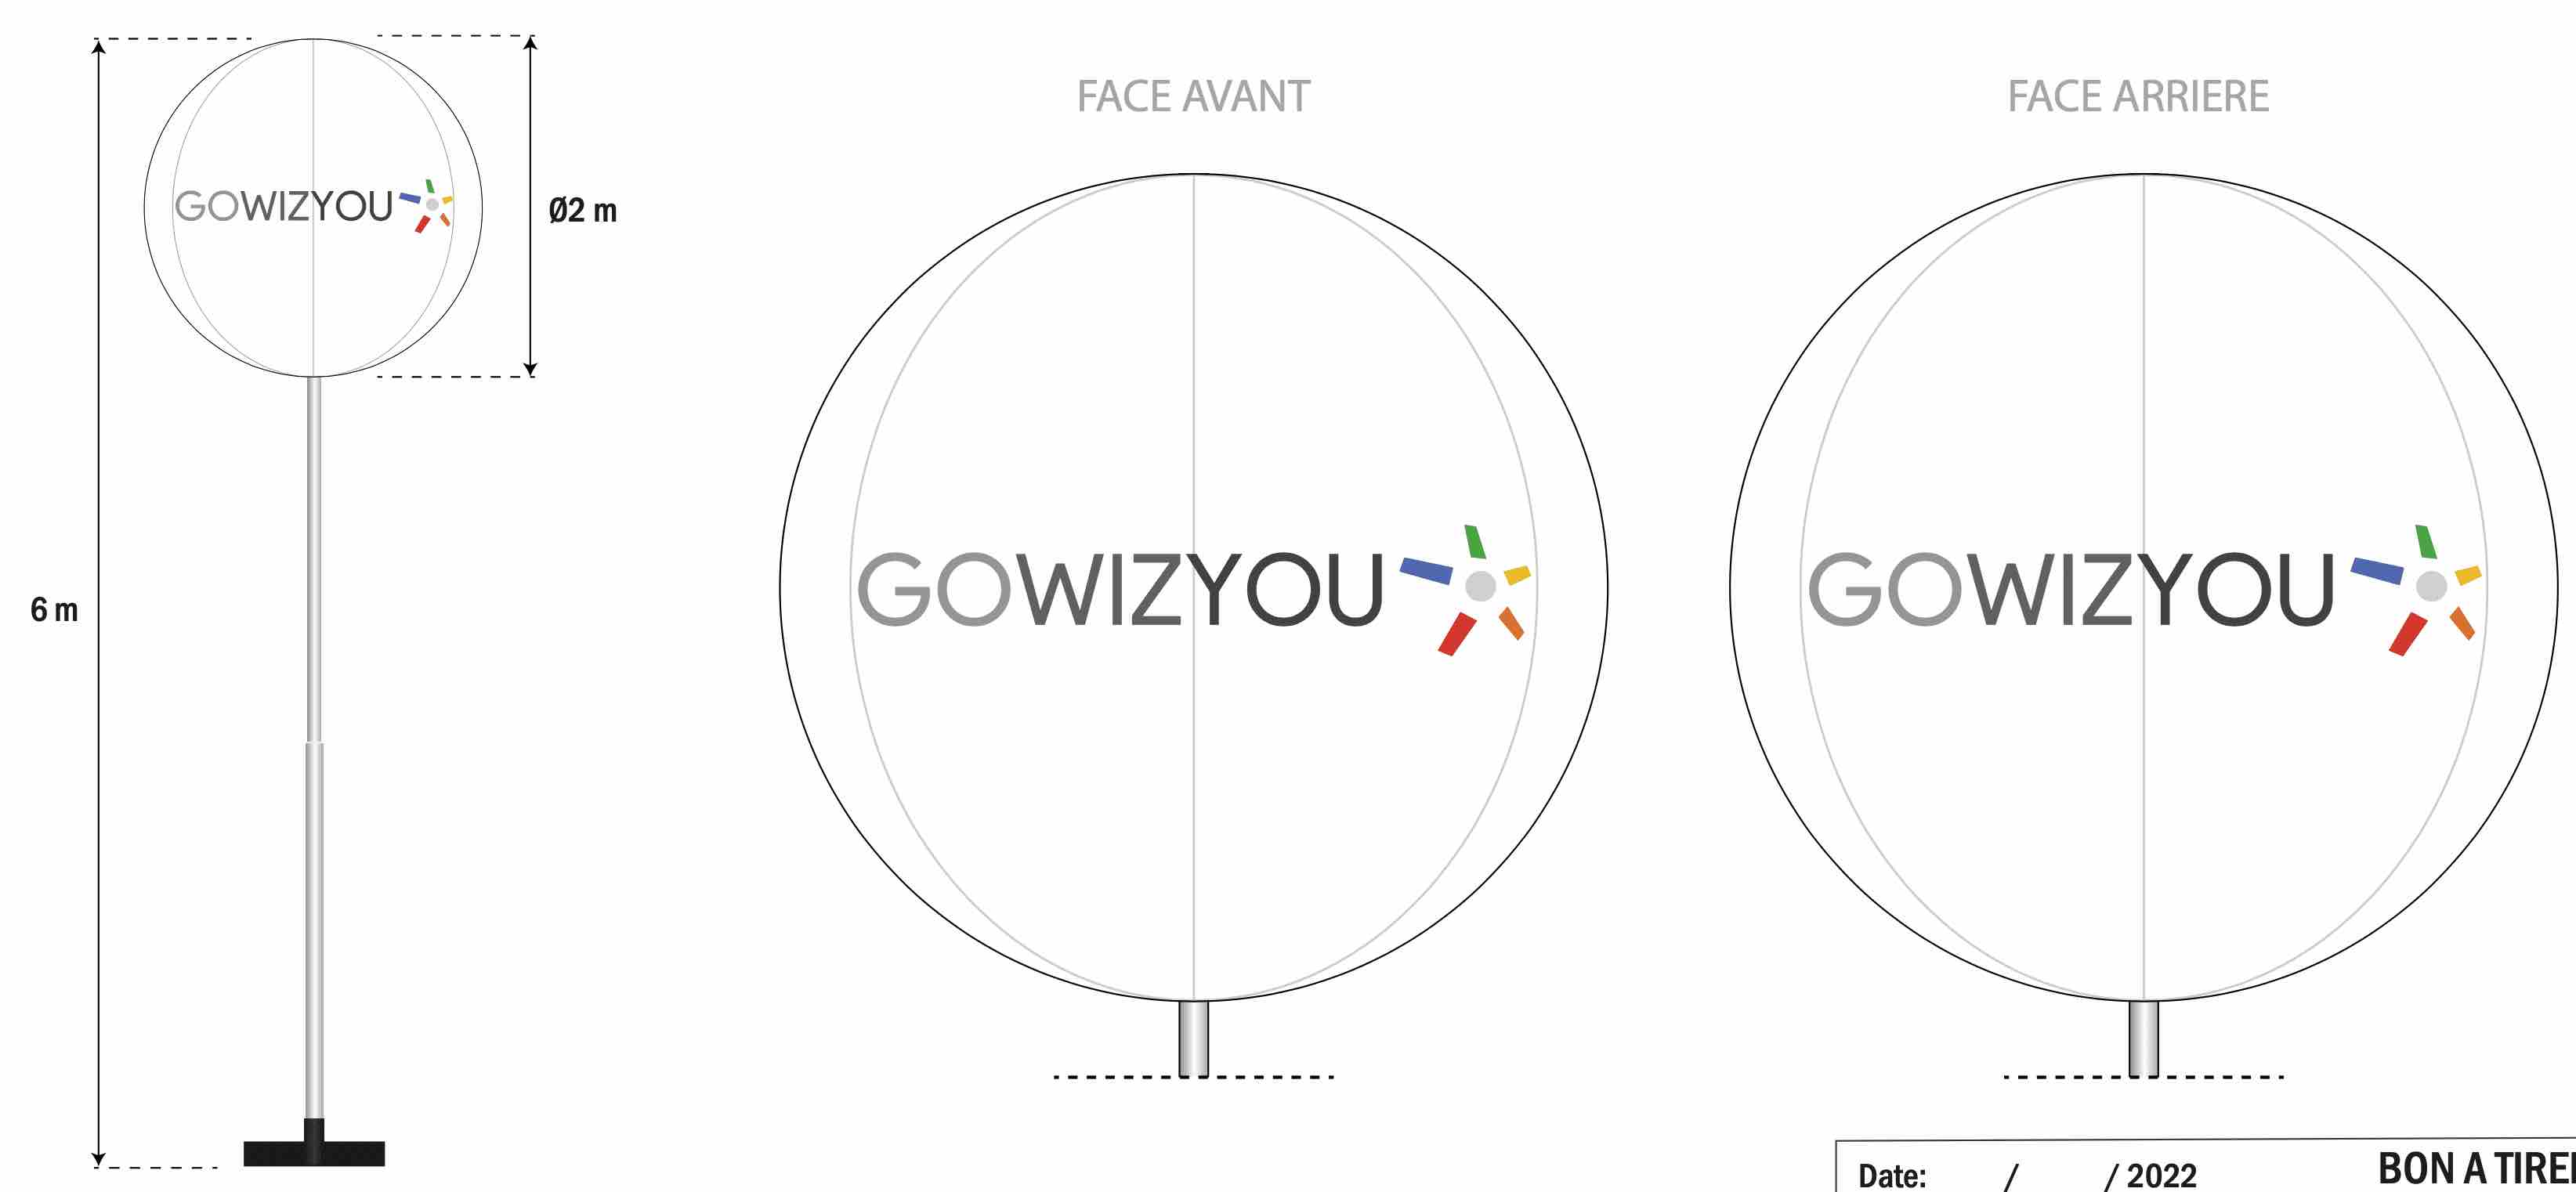 Gowizyou : ballon sphérique imprimé D = 1.5 m sur mat télescopique H = 6 m, air captif, PVC 0.18 mm simple peau.